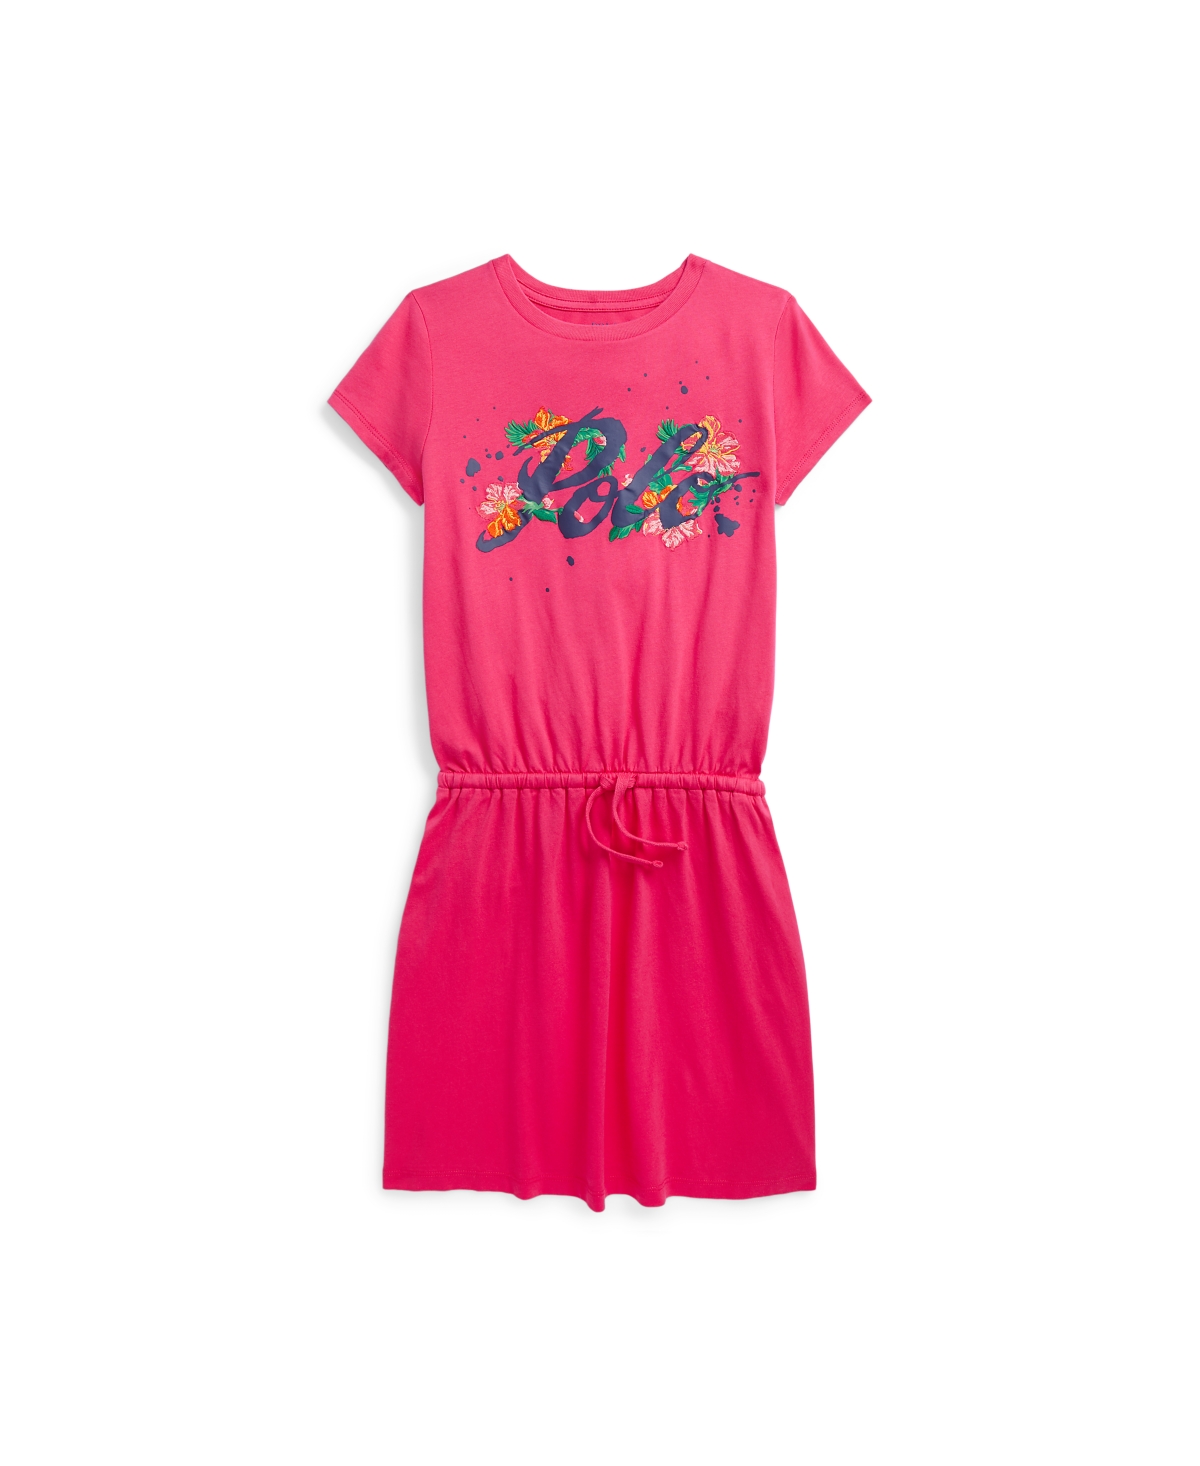 Polo Ralph Lauren Kids' Big Girls Logo Cotton Jersey T-shirt Dress In Vibrant Pink